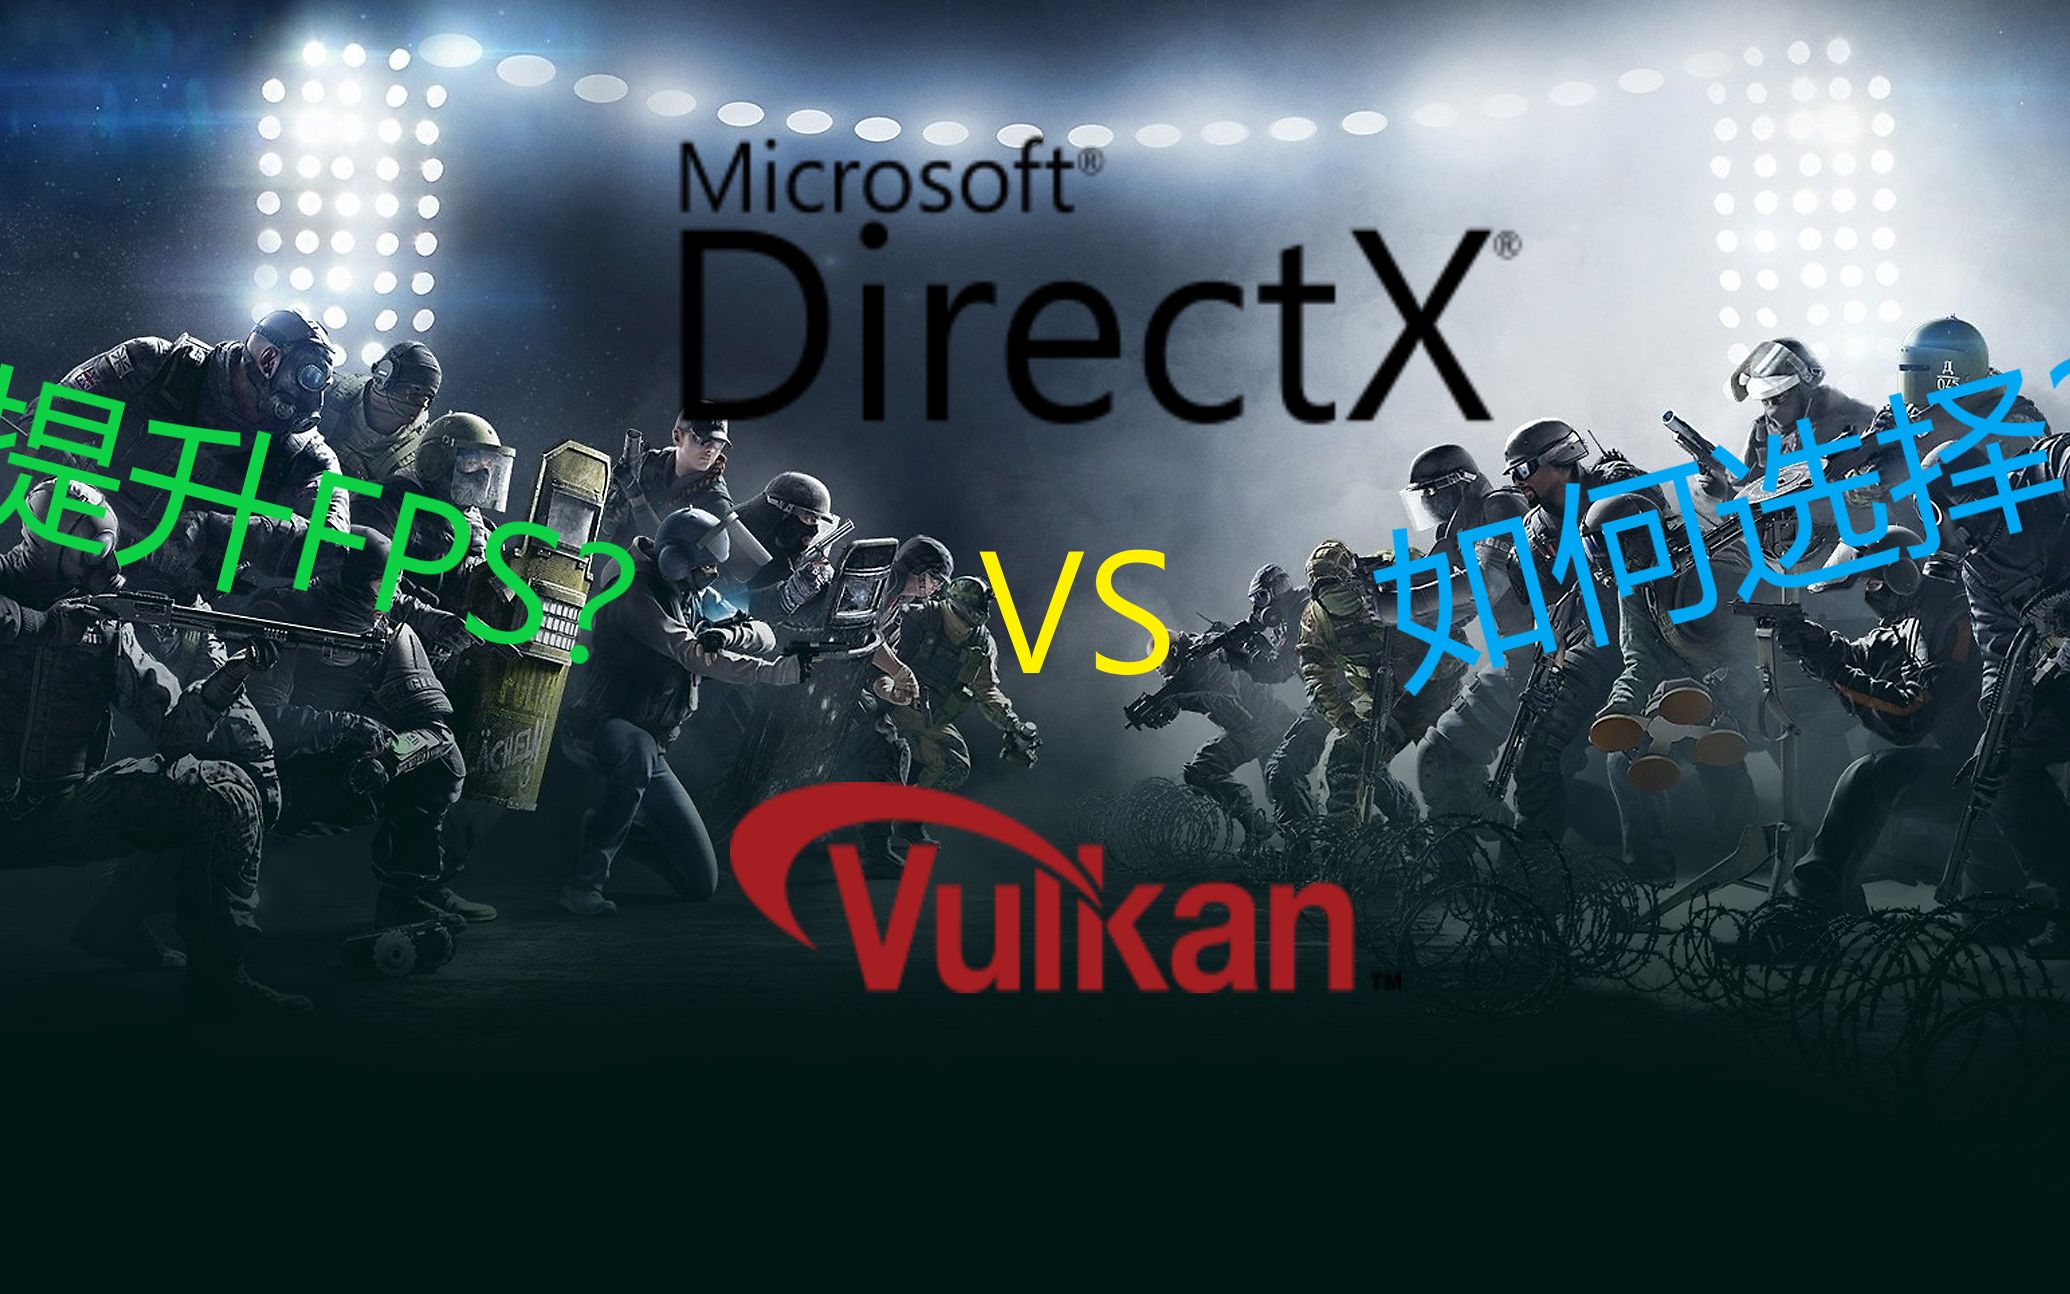 游戏卡顿？想提高FPS？详细对比Vulkan和DirectX11，究竟哪个FPS更高？【Rainbow Six Siege 彩虹六号围攻】